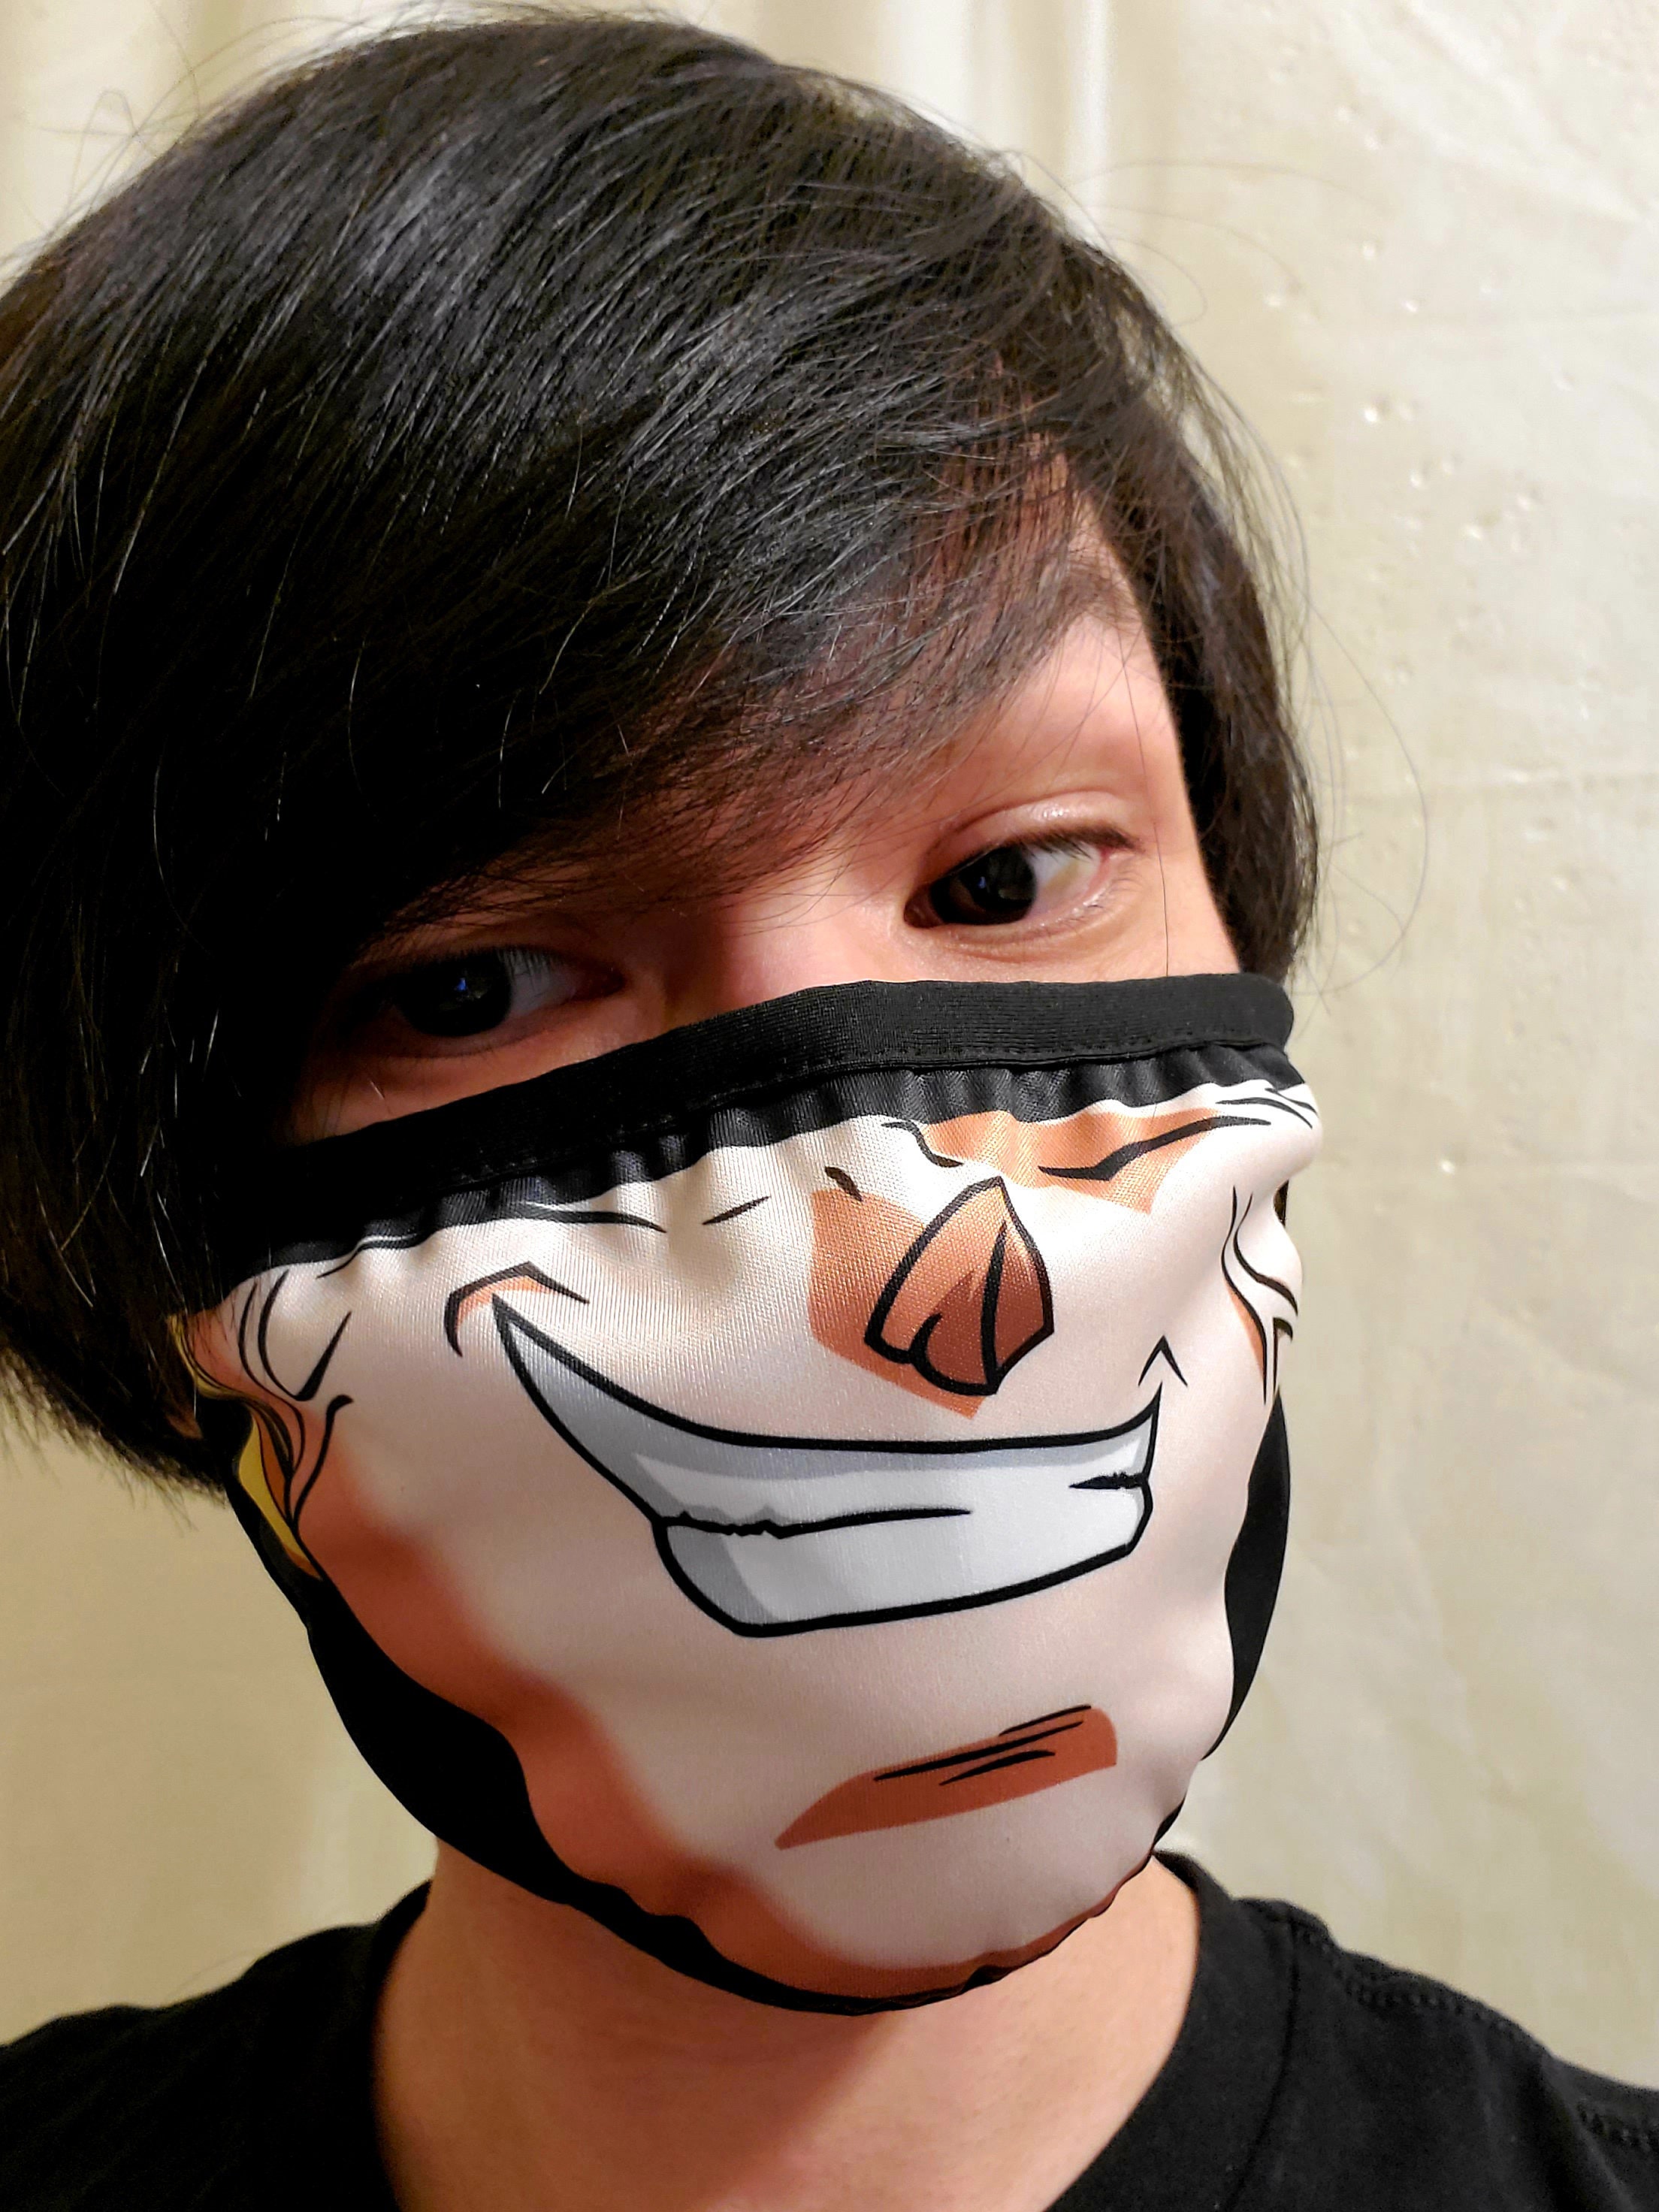 Buy Vegeta Face Dust Mask Face Mask Goku Dragon Manga Online in India  Etsy